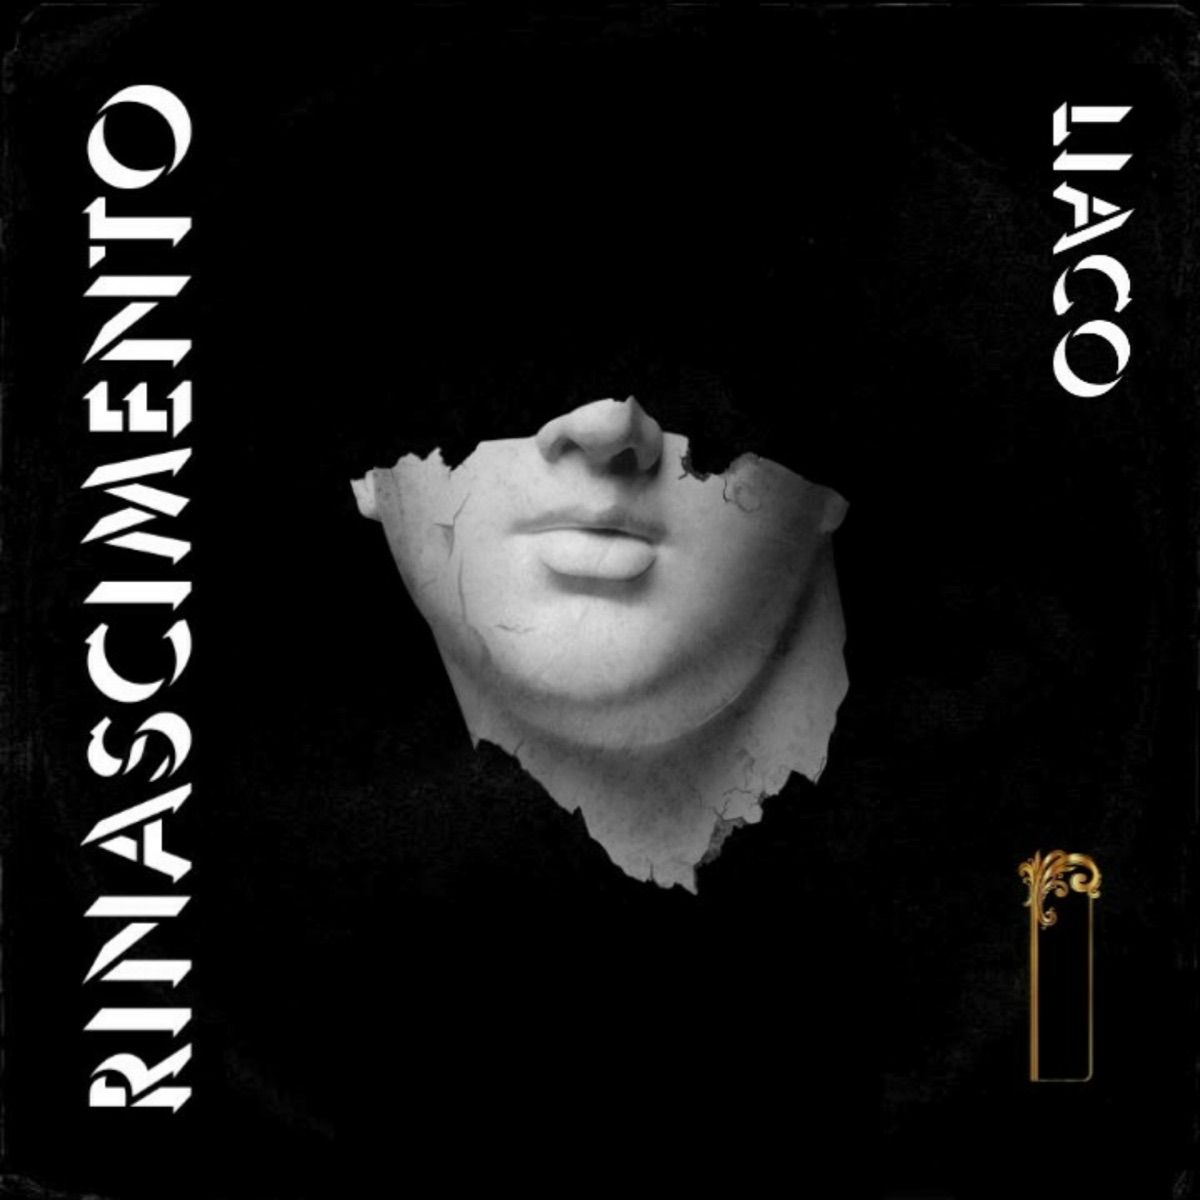 Allaccia la Cintura - Single - Album by LIACO - Apple Music